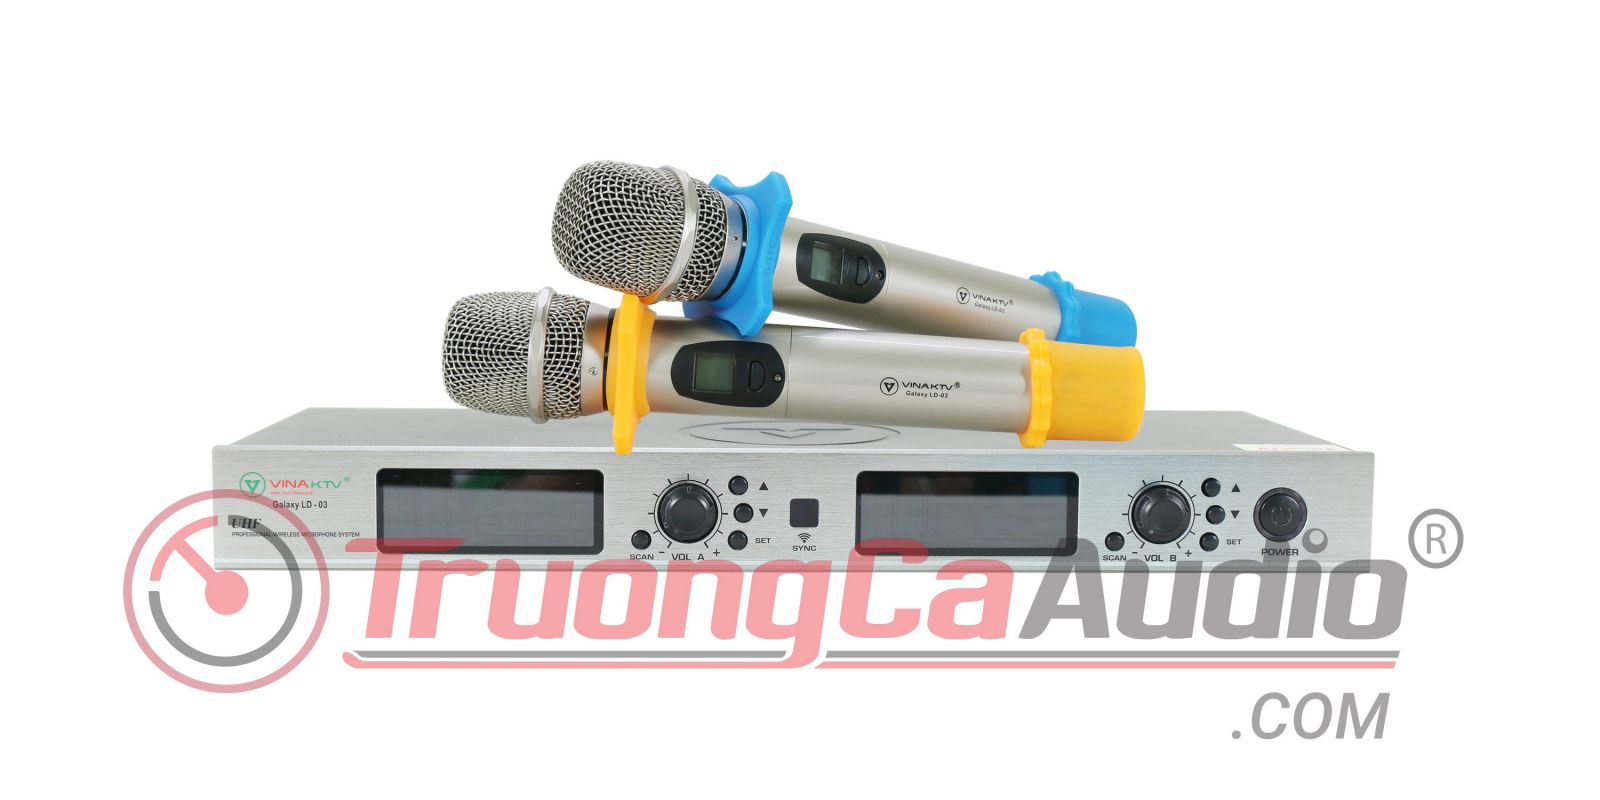 Micro không dây galaxy LD-03 là sự lựa chọn hoàn hảo cho dàn karaoke gia đình chuyên nghiệp 